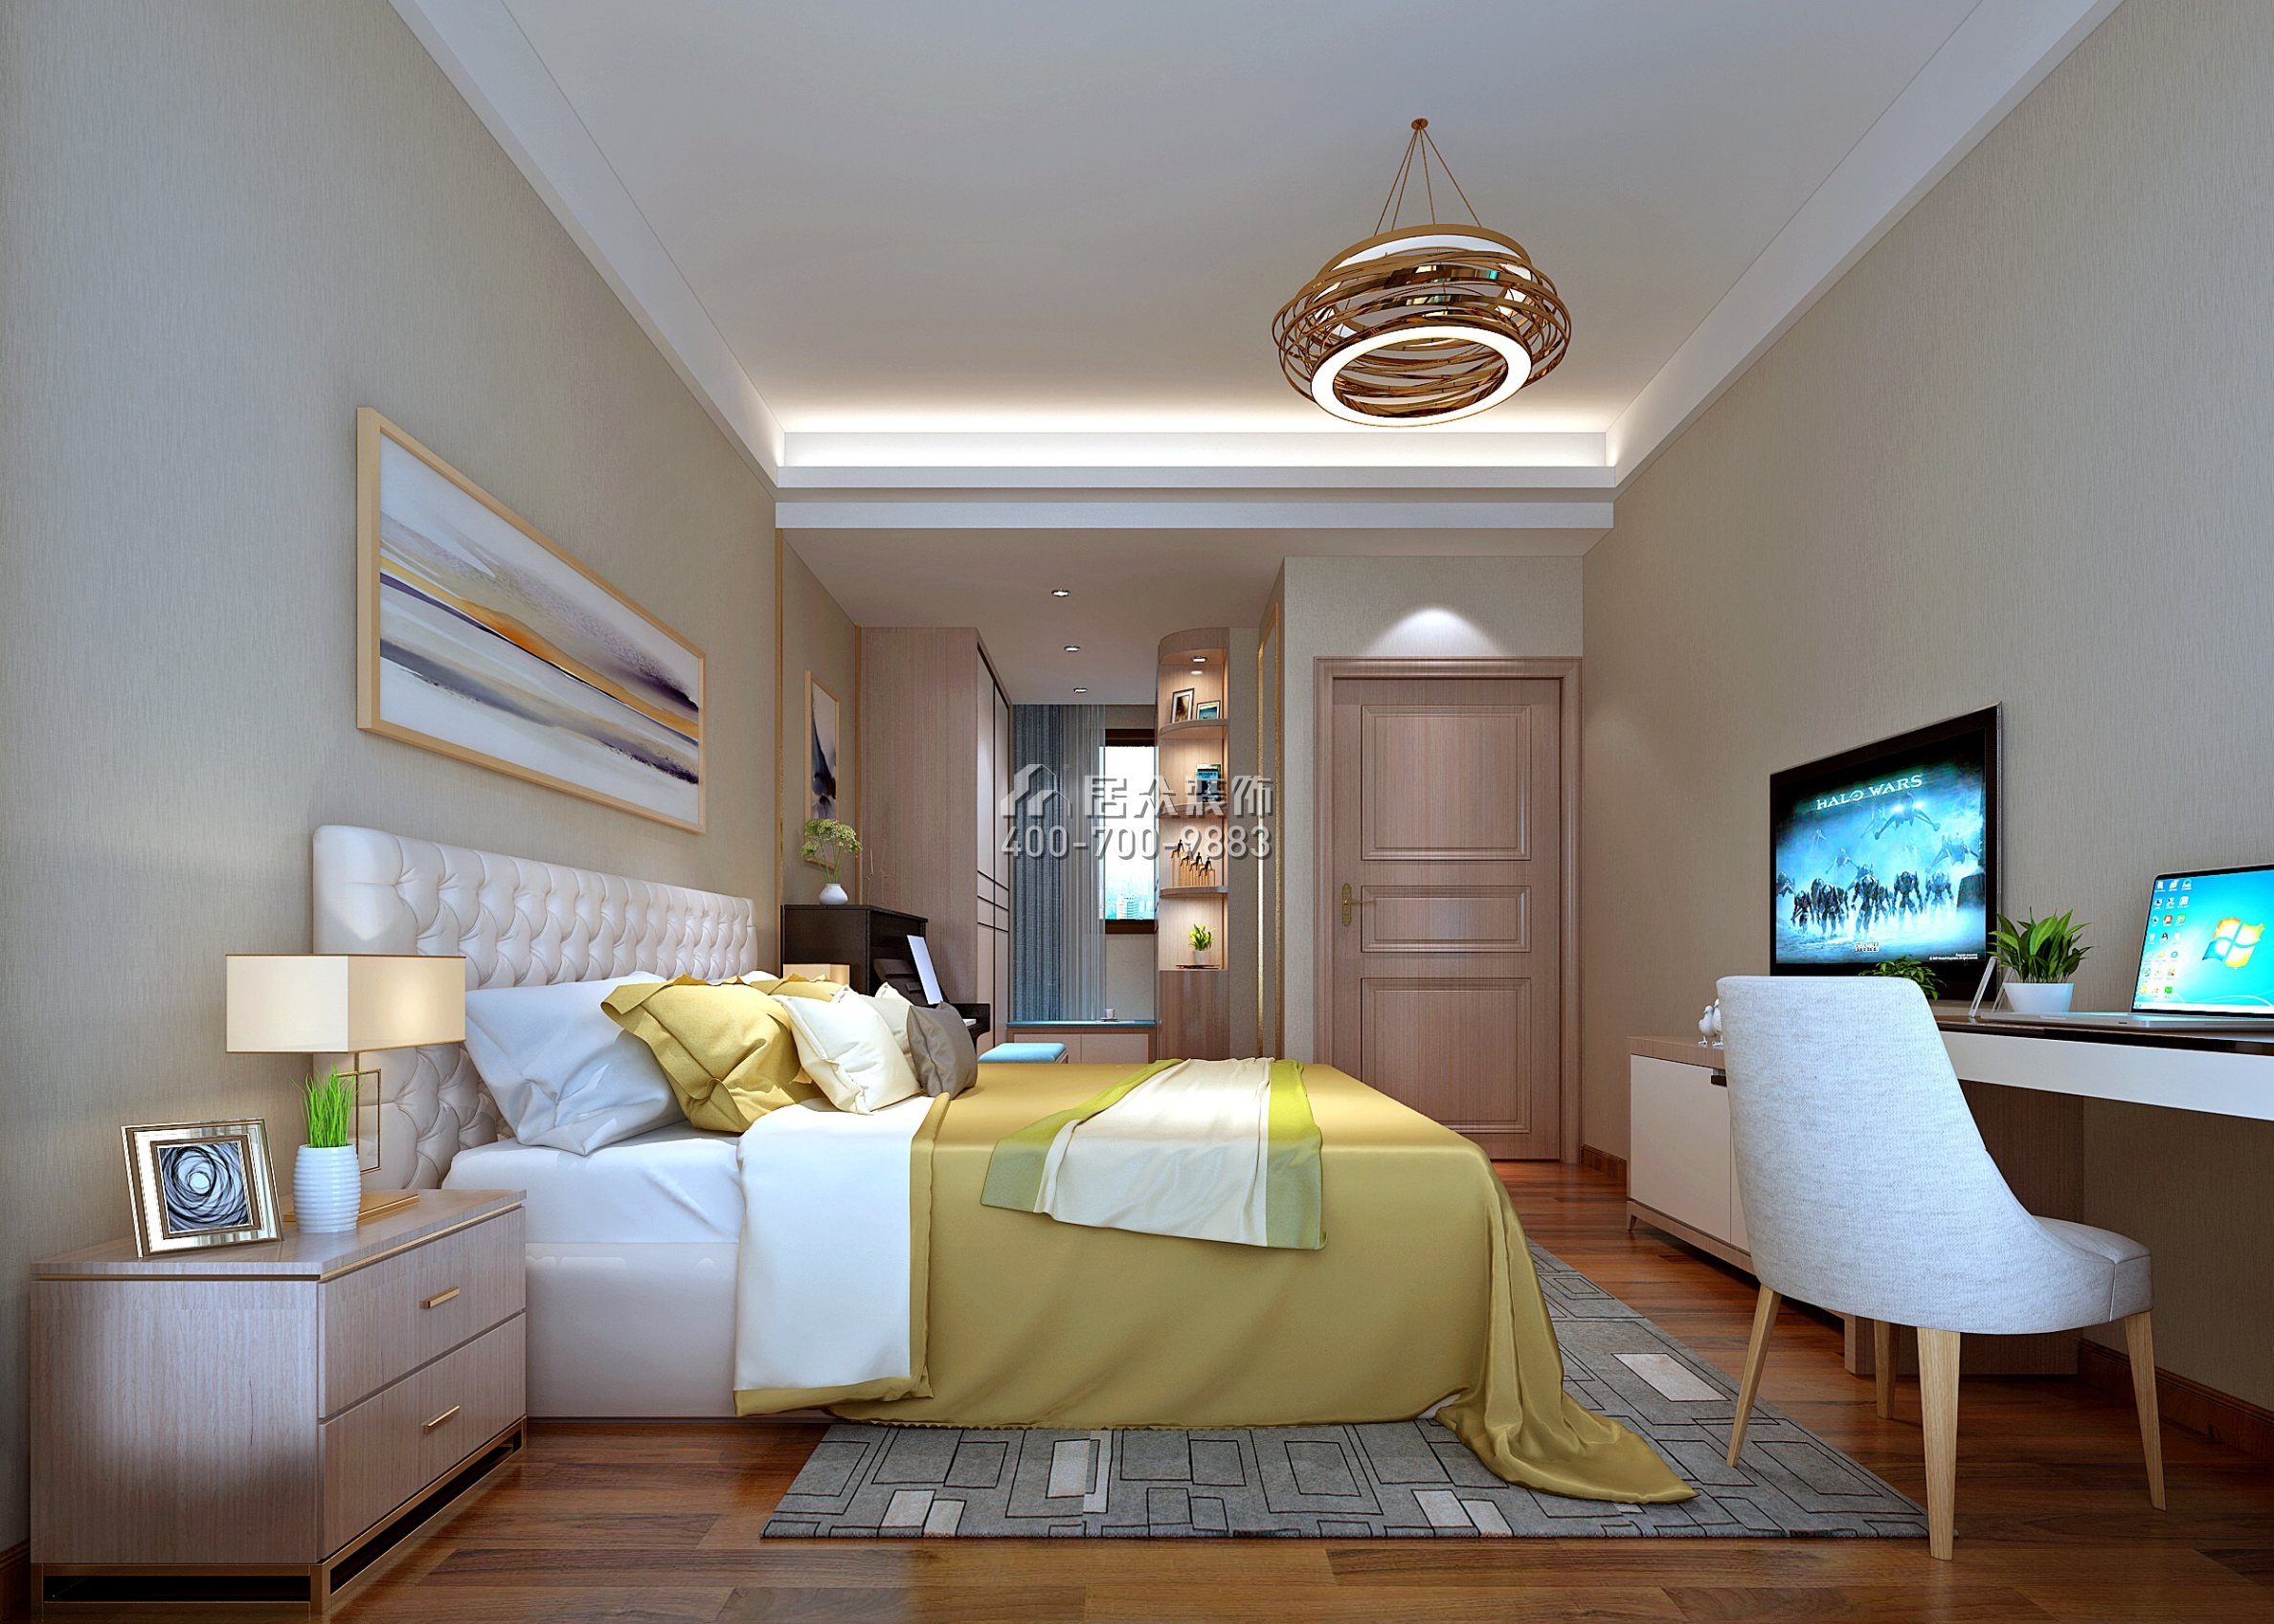 鼎峰國匯山128平方米現代簡約風格平層戶型臥室裝修效果圖